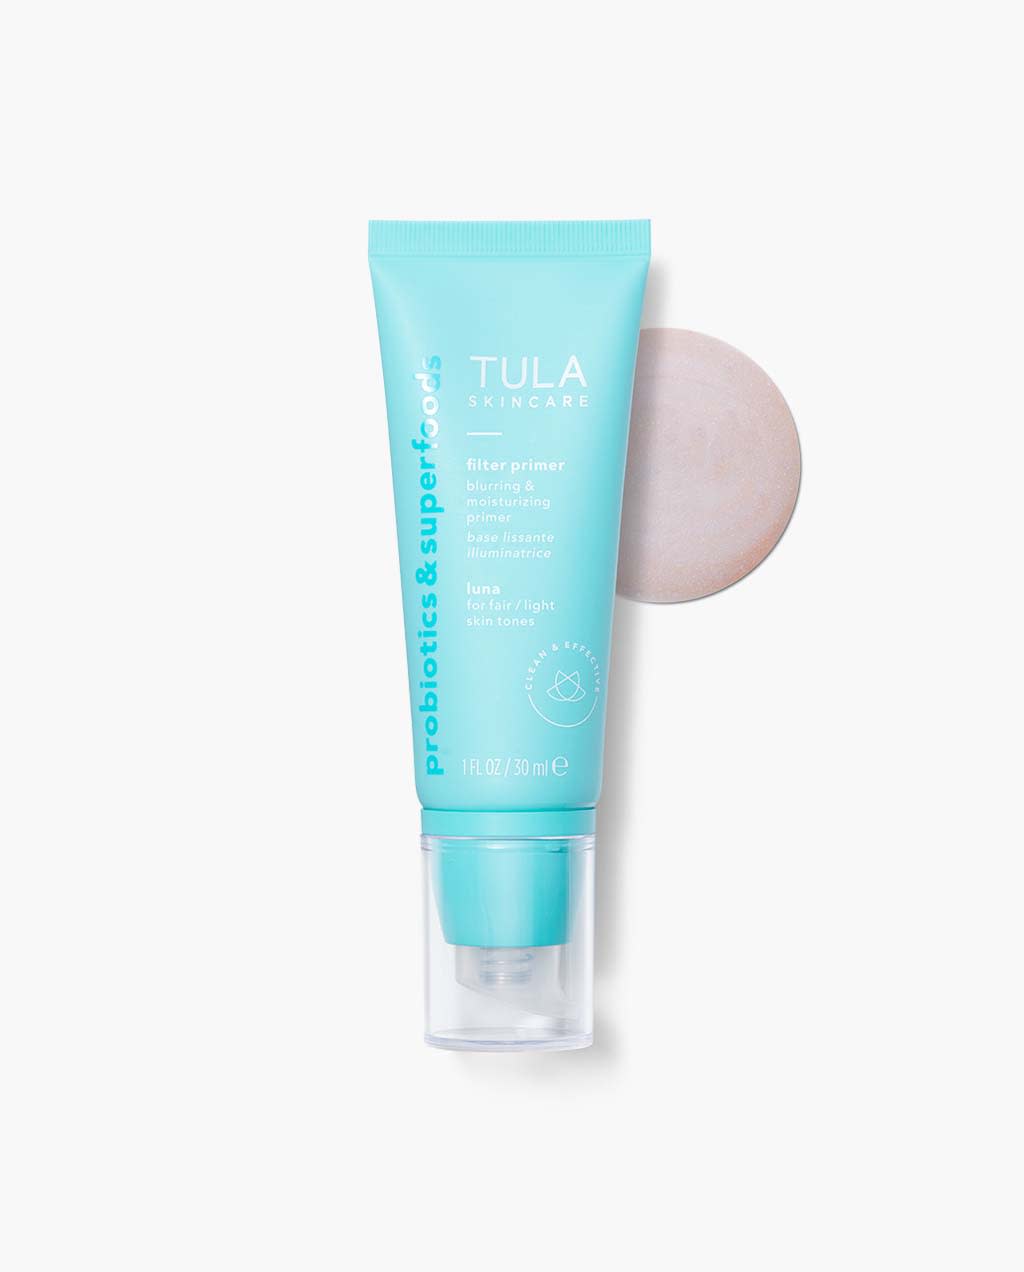 TULA Skincare Face Filter Blurring & Moisturizing Primer